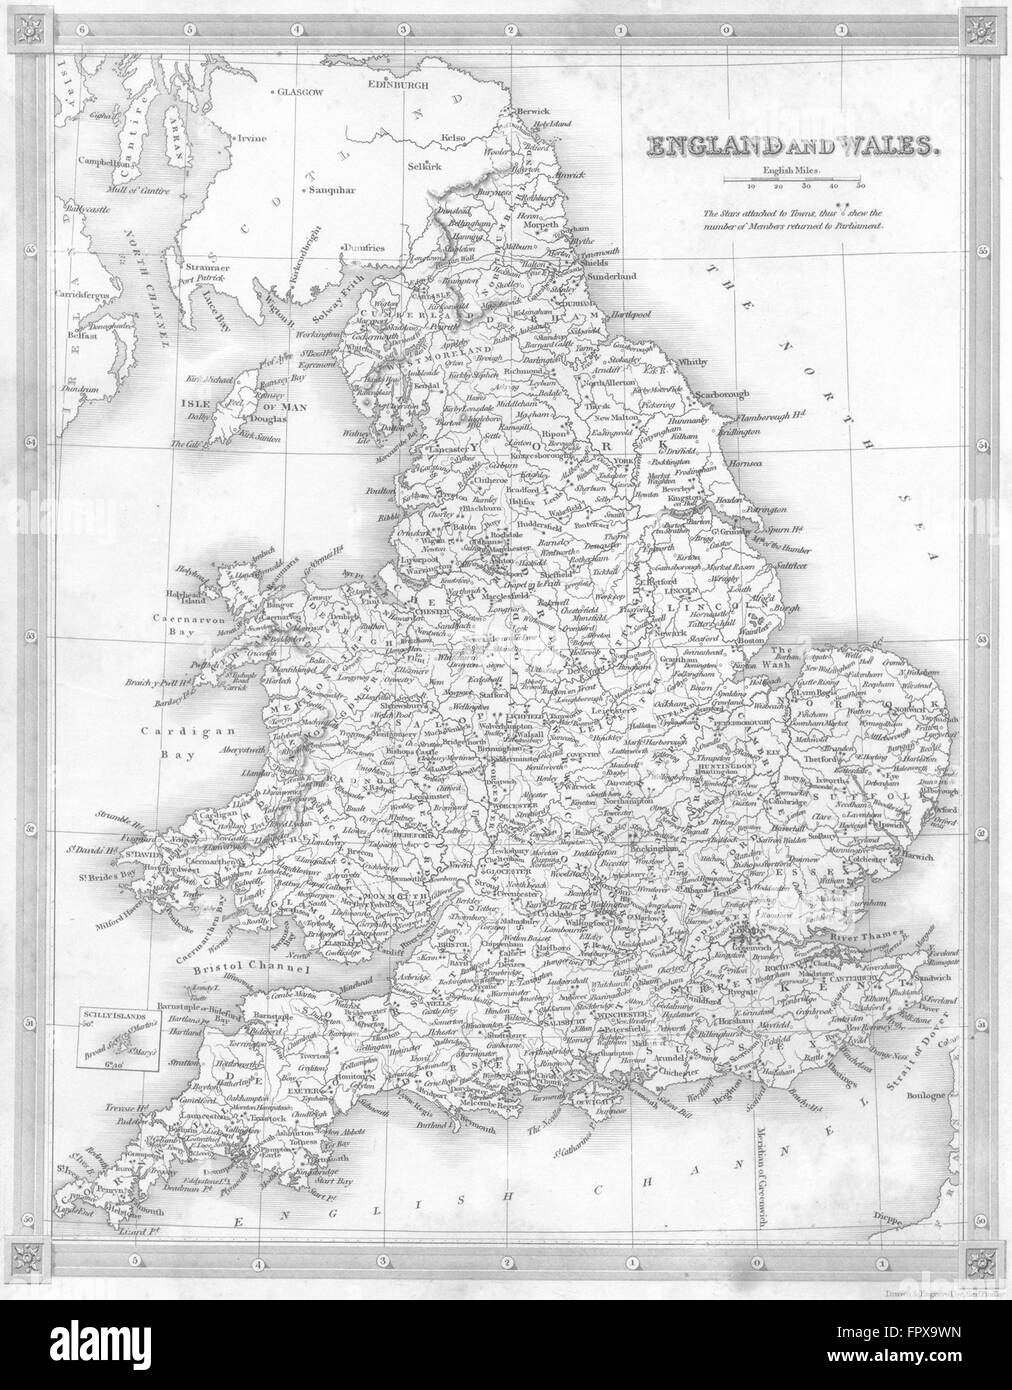 UK: England Wales: Kelly, 1841 antique map Stock Photo